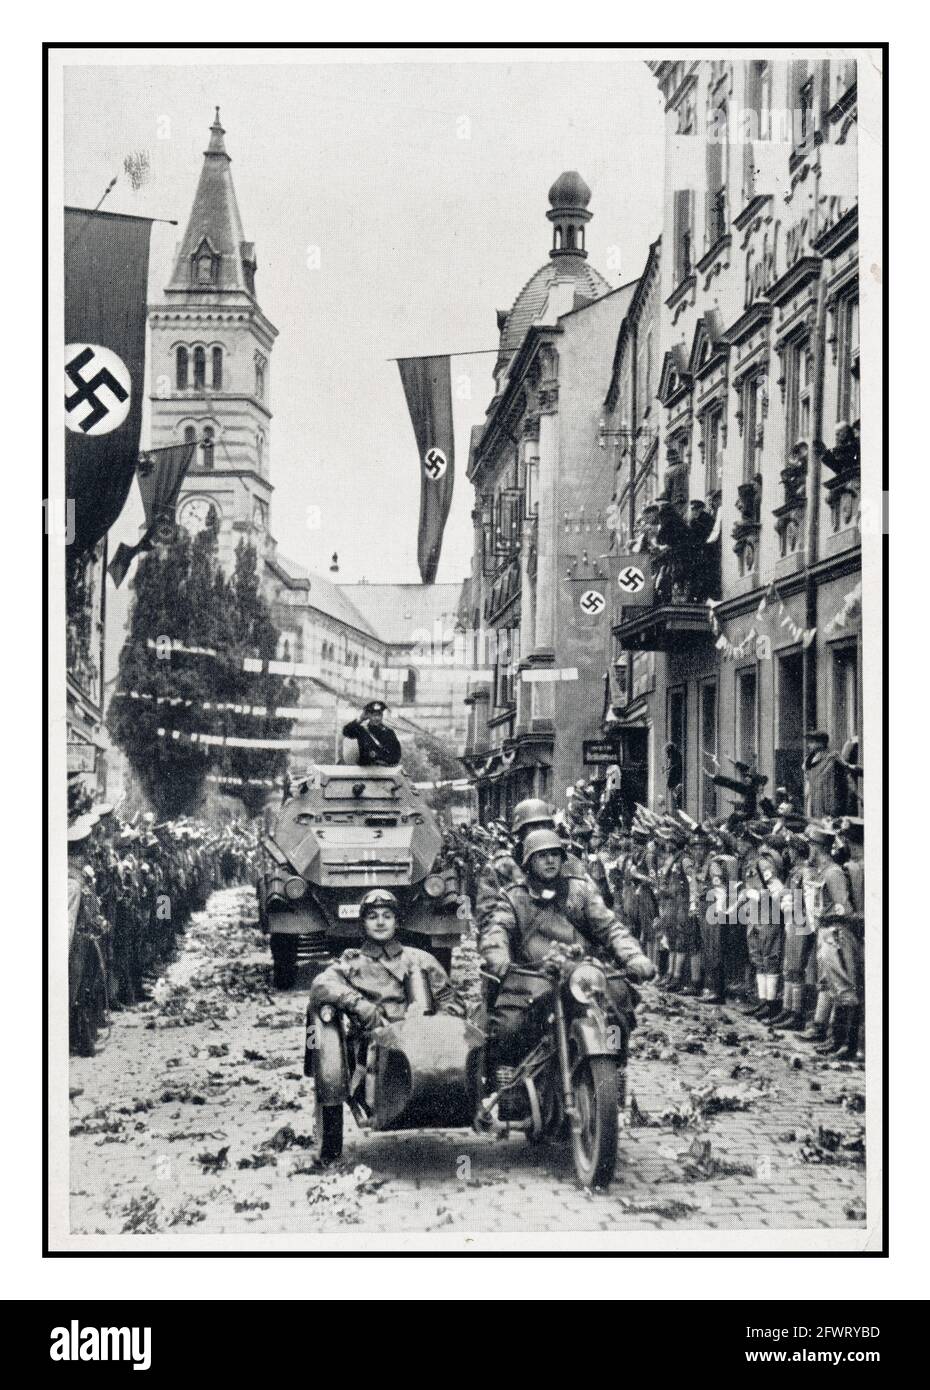 SUDETENLAND 1938 défilé militaire nazi à Kraslice (Graslitz) après l'annexion de la Sudetenland en octobre 1938 certains résidents locaux accueillent les Nazis avec des bannières, drapeaux et fleurs Swastika lancés sur la route Banque D'Images